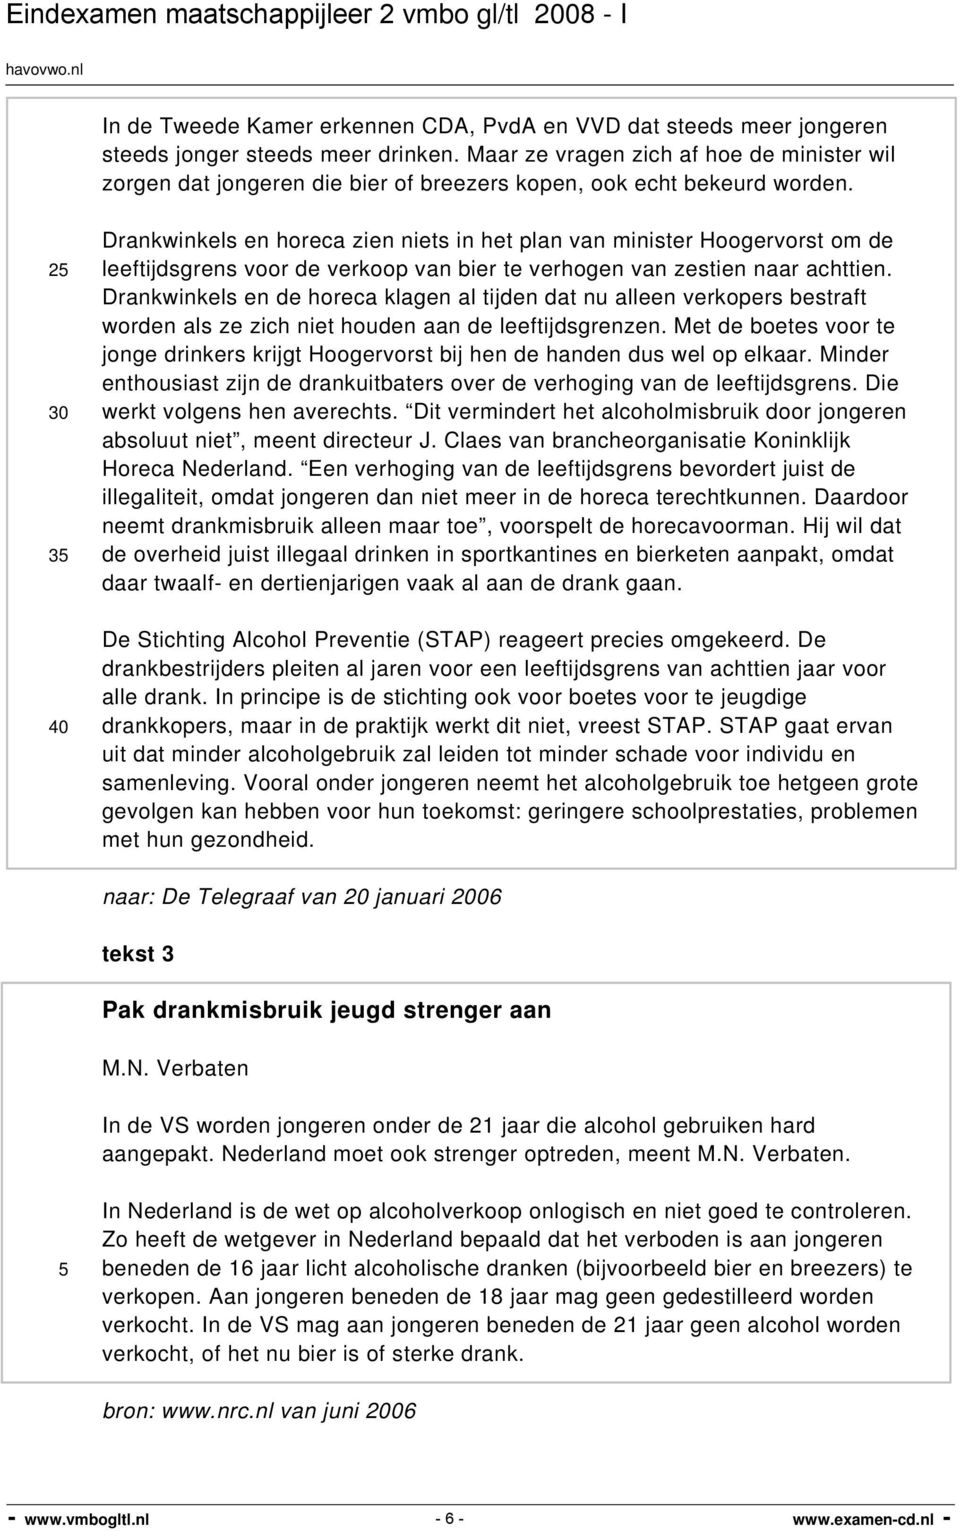 2 30 3 40 Drankwinkels en horeca zien niets in het plan van minister Hoogervorst om de leeftijdsgrens voor de verkoop van bier te verhogen van zestien naar achttien.